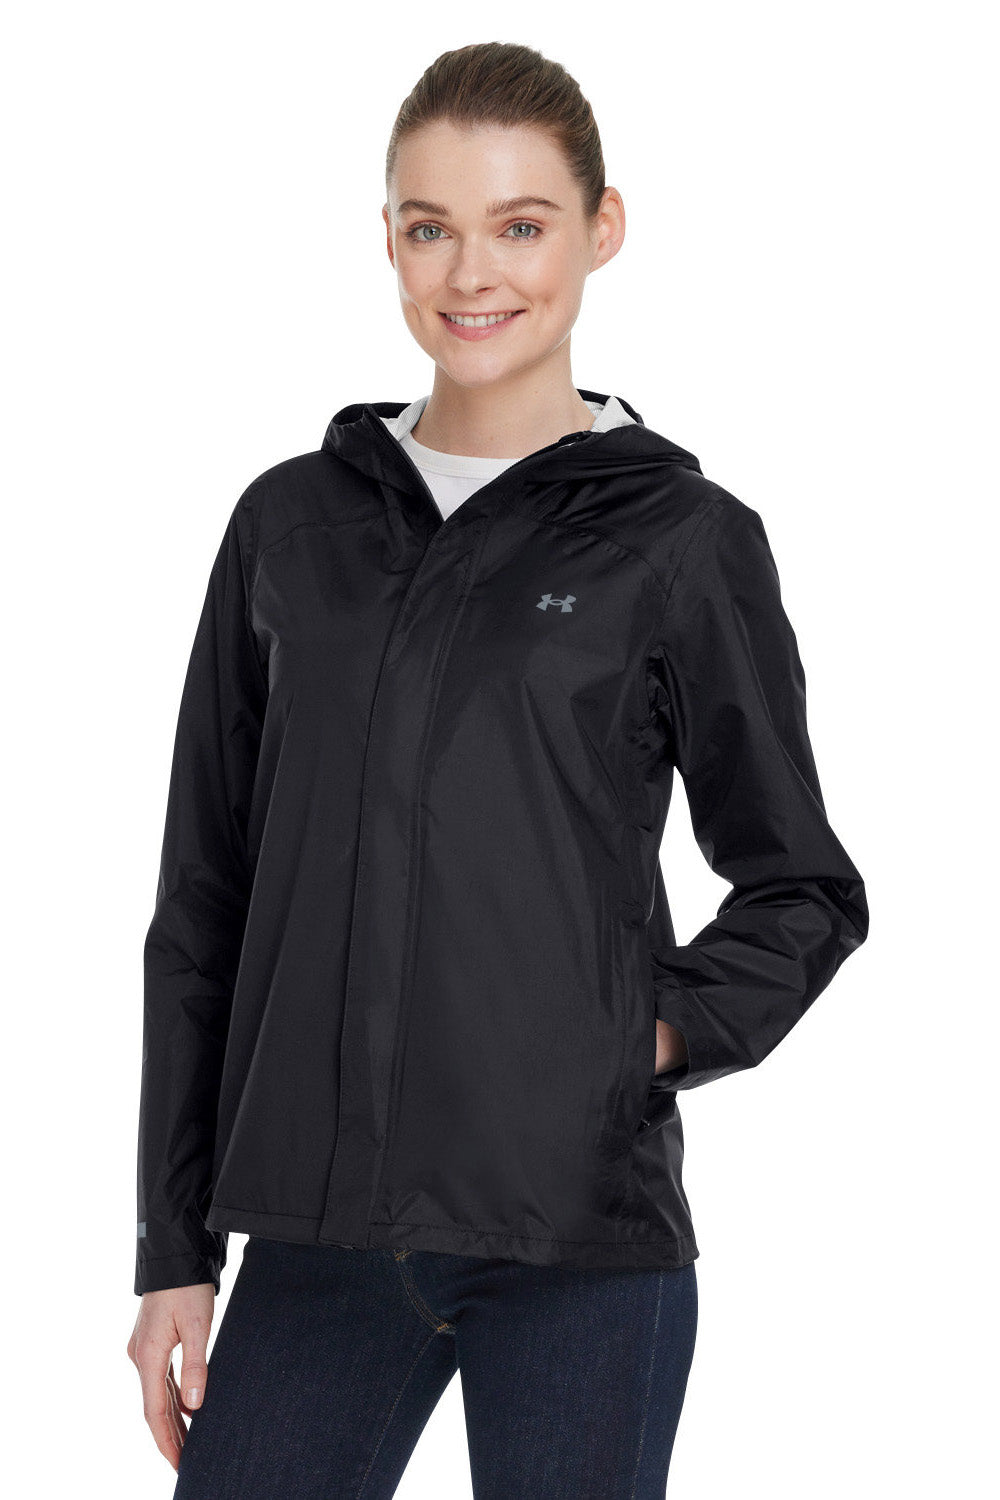 Under Armour 1374645 Womens Cloudstrike 2.0 Waterproof Full Zip Hooded Jacket Black Model 3Q